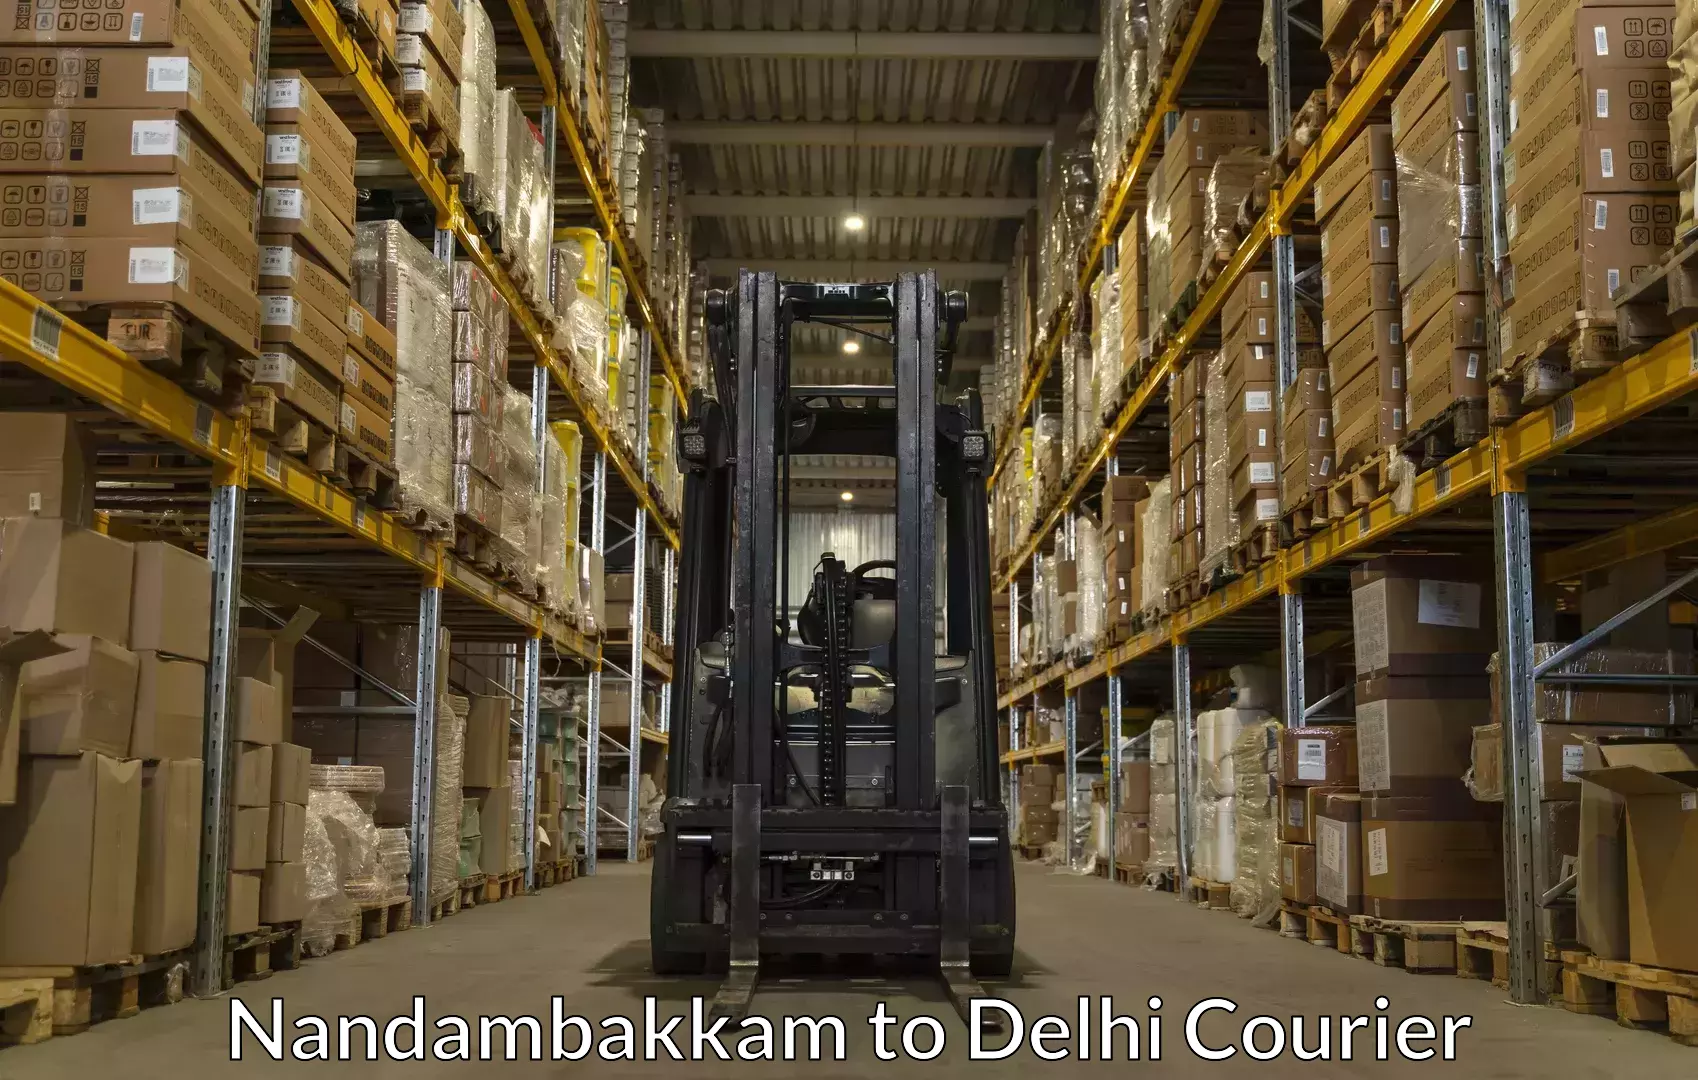 Luggage delivery system Nandambakkam to NIT Delhi